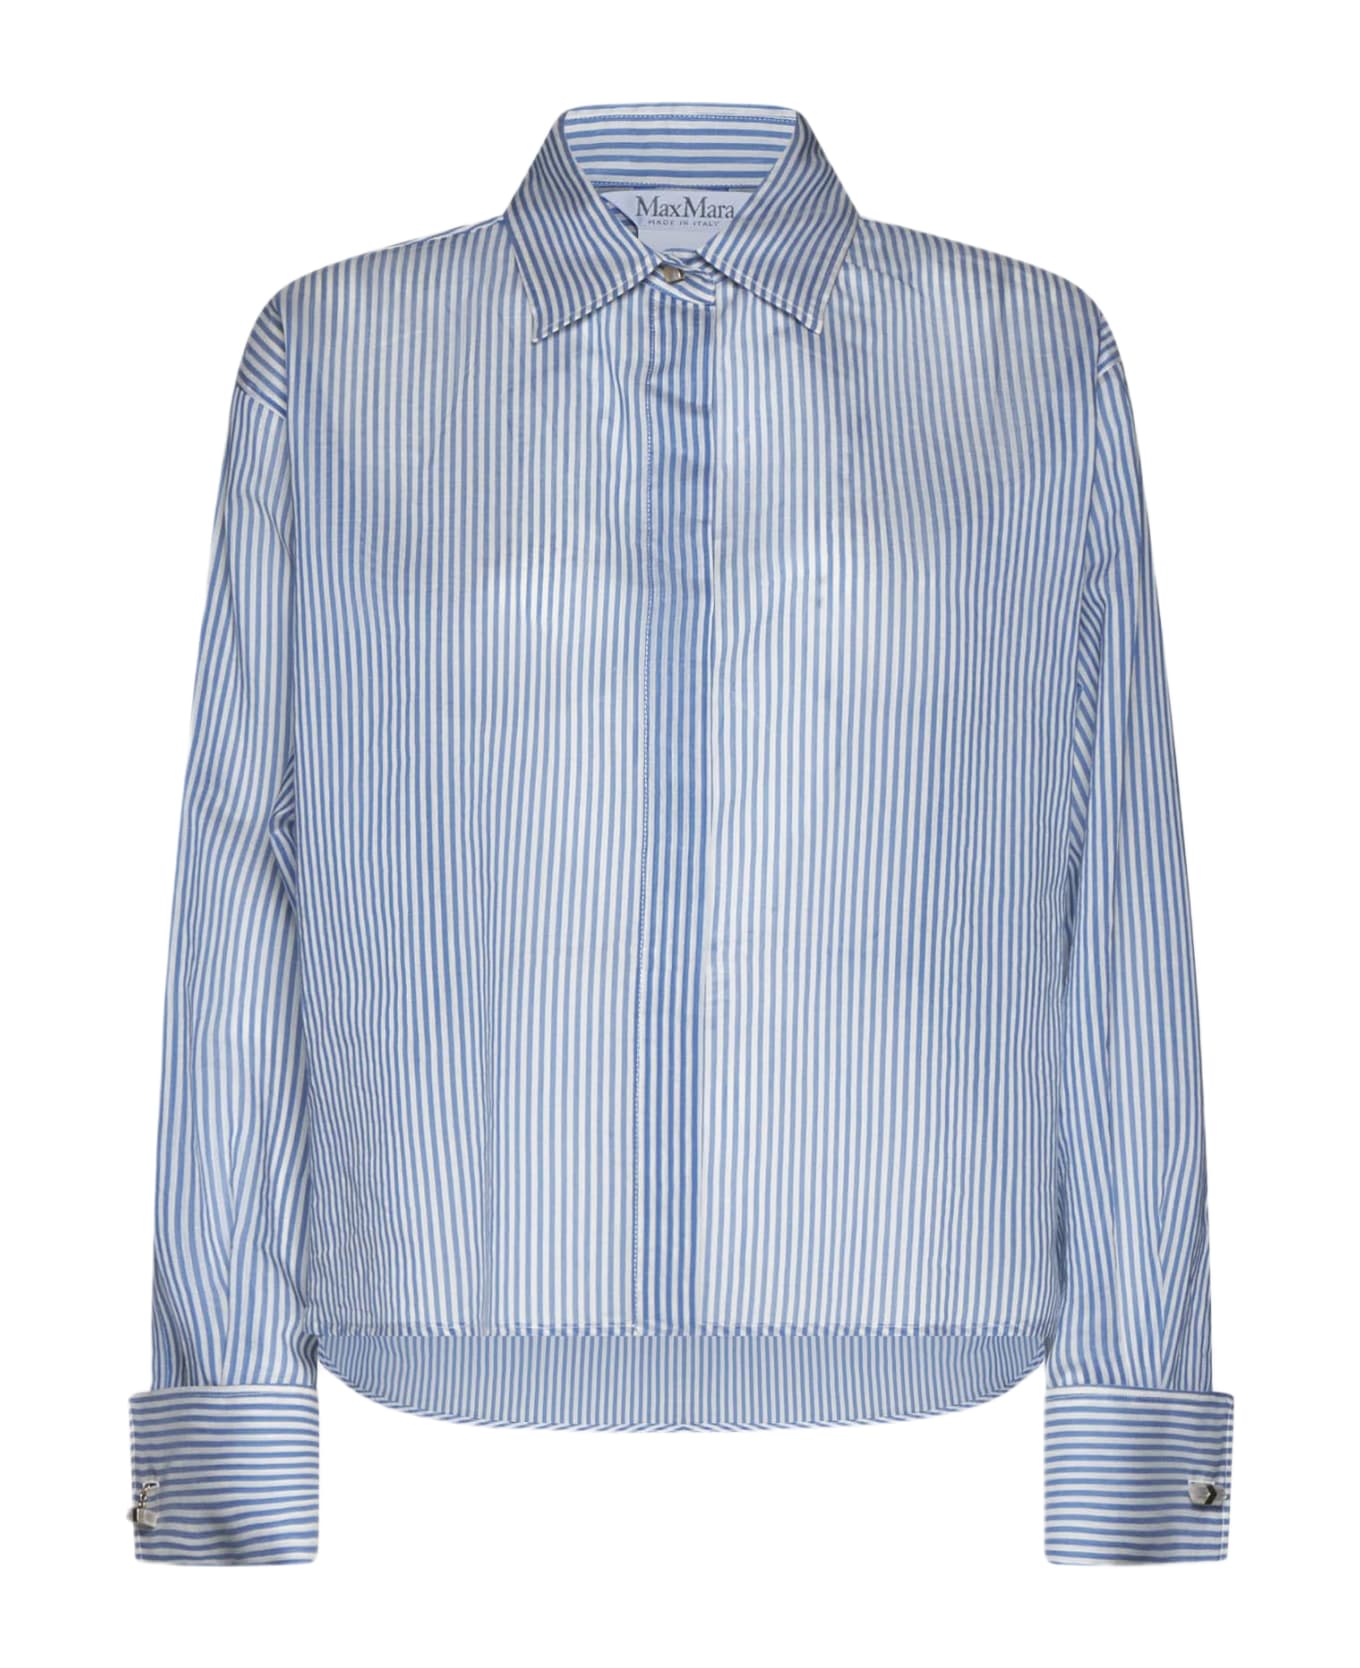 Max Mara Vertigo Cotton And Silk Shirt - Light blue